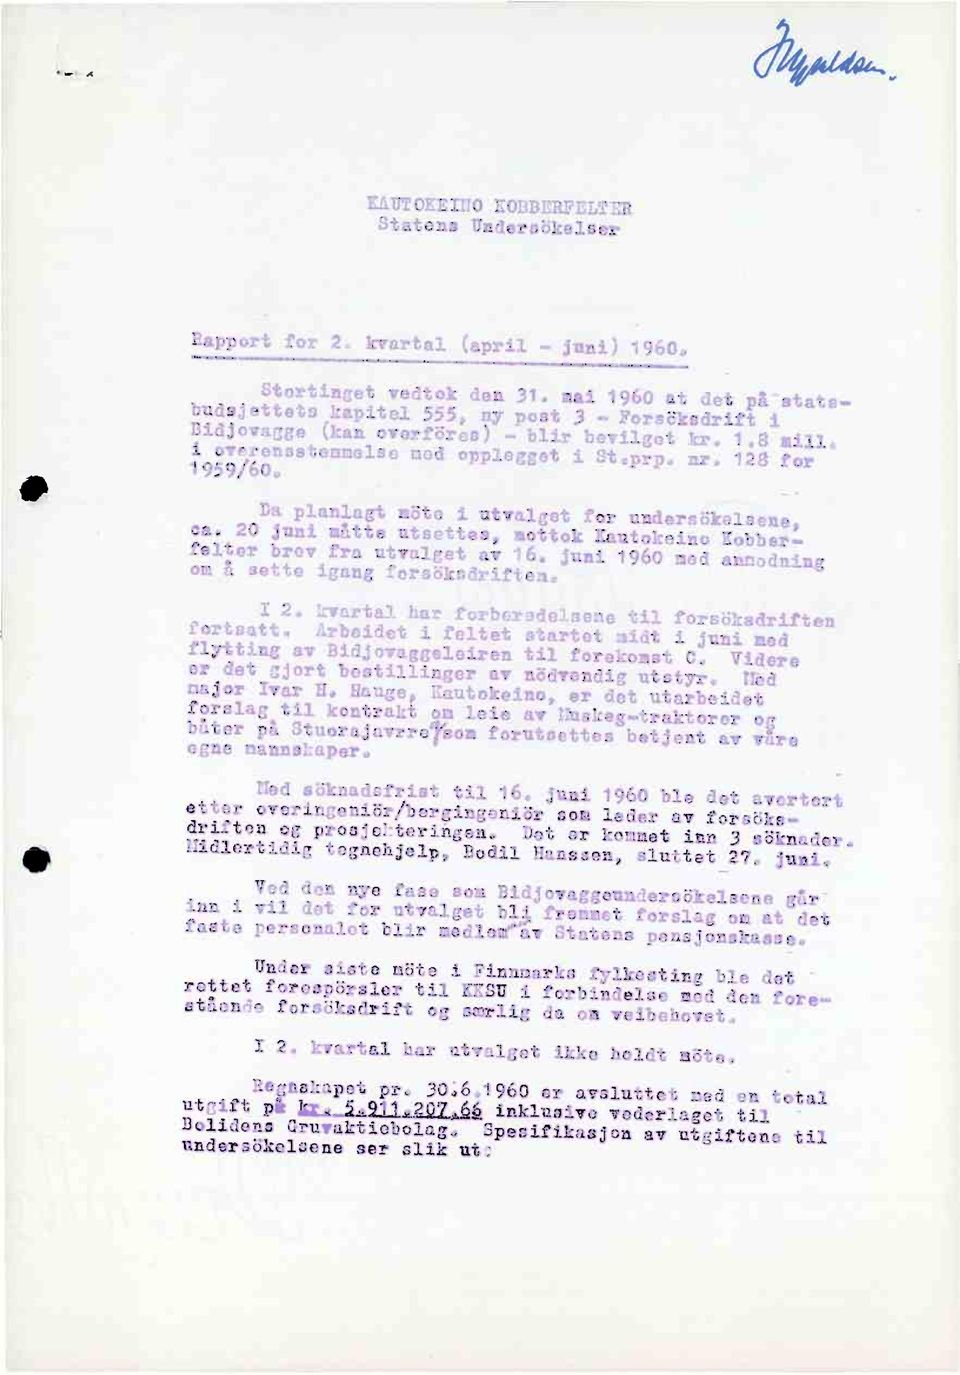 Da planlagt mute i utvalget for unders6kelsene, ea. 20 juni måtte utsettes,mottok KautokeinoKobberfelter brev fra utvalget av 16. juni 1960 med annadning om å sette igang forsbksdriften.